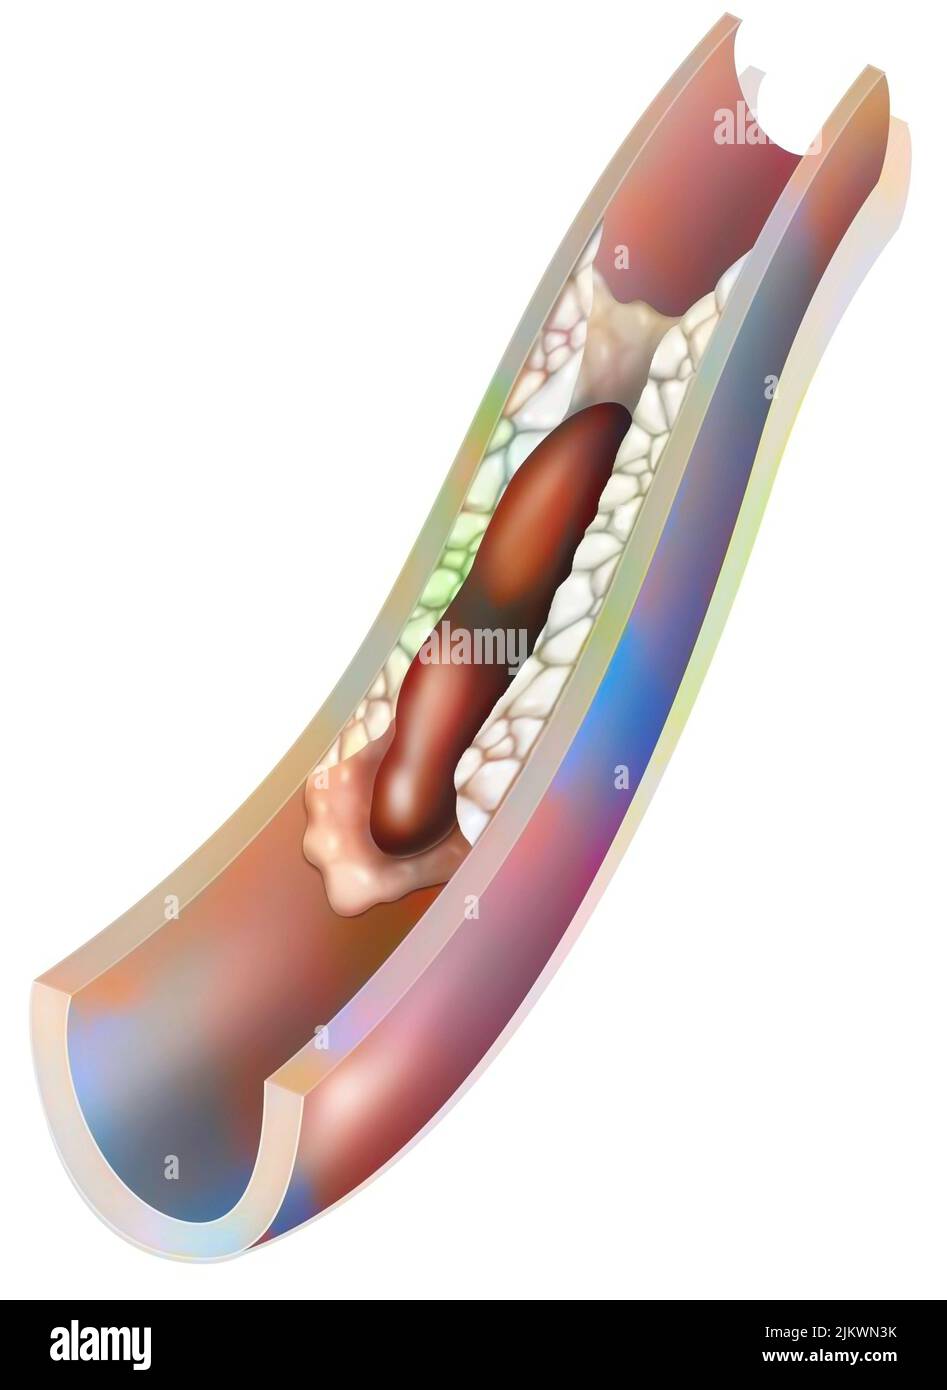 Arterie mit atheromatösem Plaque und einem Thrombus (Blutgerinnsel). Stockfoto